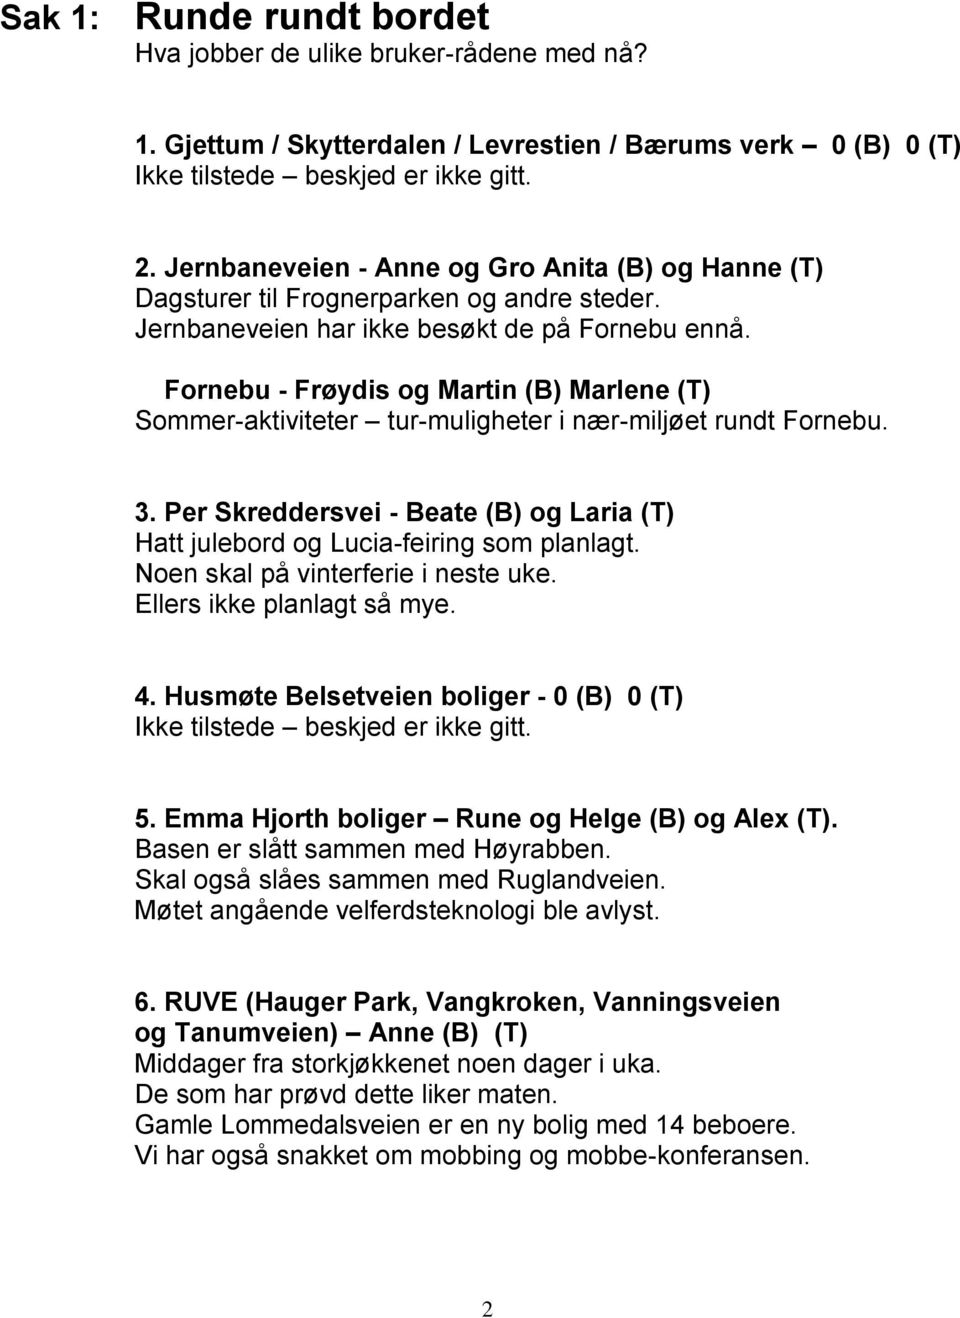 Fornebu - Frøydis og Martin (B) Marlene (T) Sommer-aktiviteter tur-muligheter i nær-miljøet rundt Fornebu. 3. Per Skreddersvei - Beate (B) og Laria (T) Hatt julebord og Lucia-feiring som planlagt.